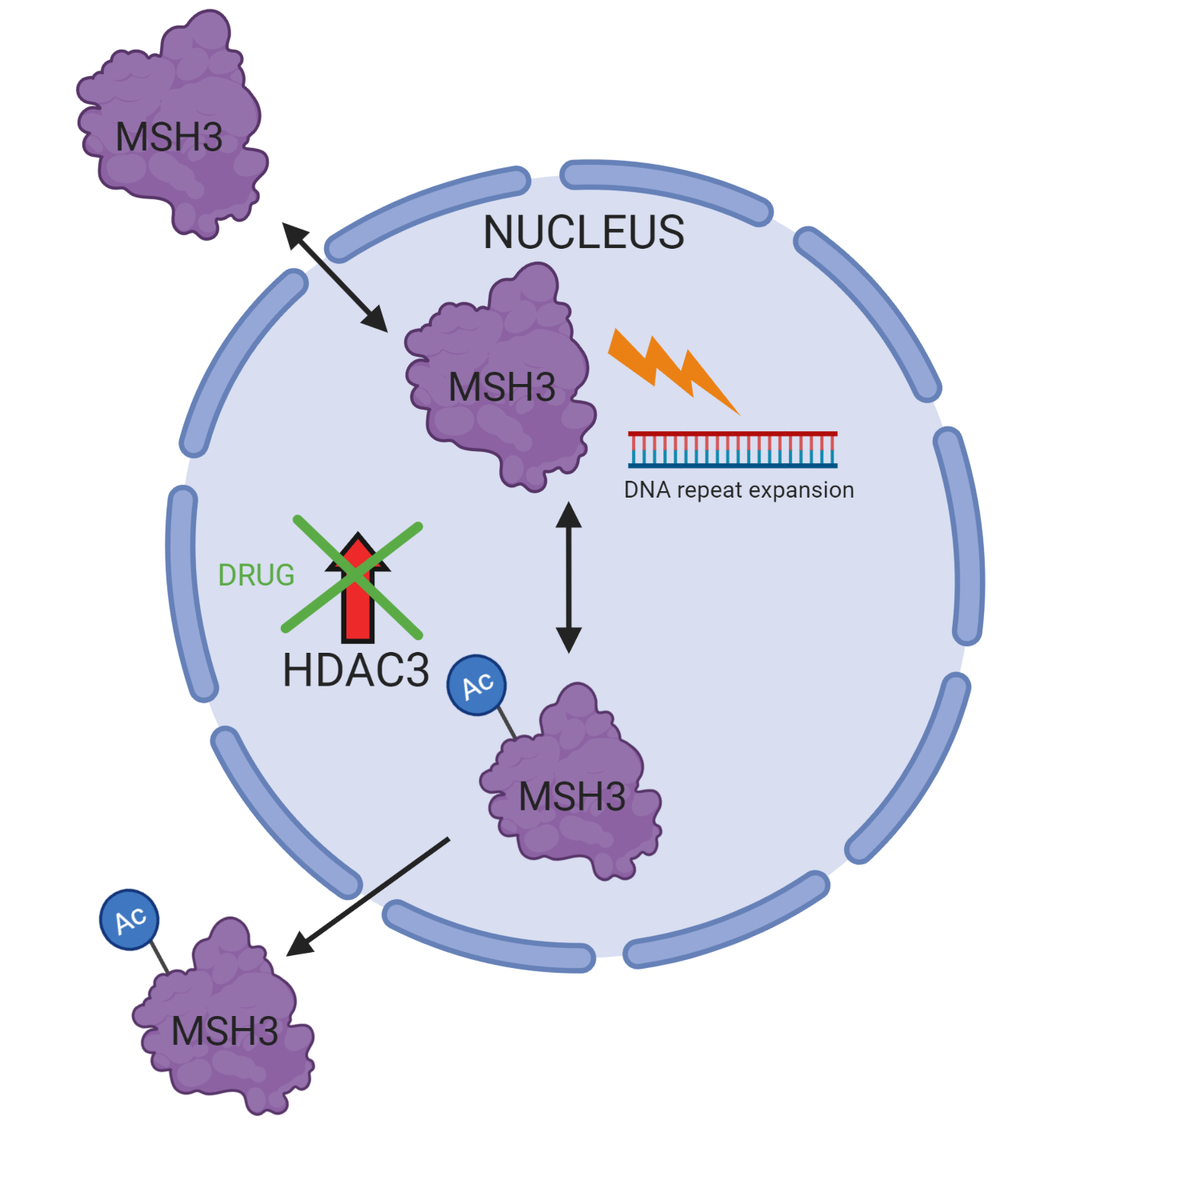 Hoe onderdrukt het medicijn CAG-repeat expansie? Als een Acetylgroep (Ac) wordt toegevoegd aan MSH3, wordt het uit de celkern gezet waar het geen toegang heeft tot de CAG-herhaling en dus CAG-repeat expansie stopzet. Normaal gesproken verwijderd HDAC3 deze acetylgroep (Ac) waardoor MSH3 in de celkern blijft en CAG-repeat expansie veroorzaakt. Als onderzoekers de cellen behandelen met het medicijn, kan HDAC3 niet meer deze acetylgroep (Ac) verwijderen. Dit betekent dat MSH3 buiten de celkern blijft vastzitten waar het geen toegang heeft tot de CAG-herhaling. Schema gemaakt met BioRender.  